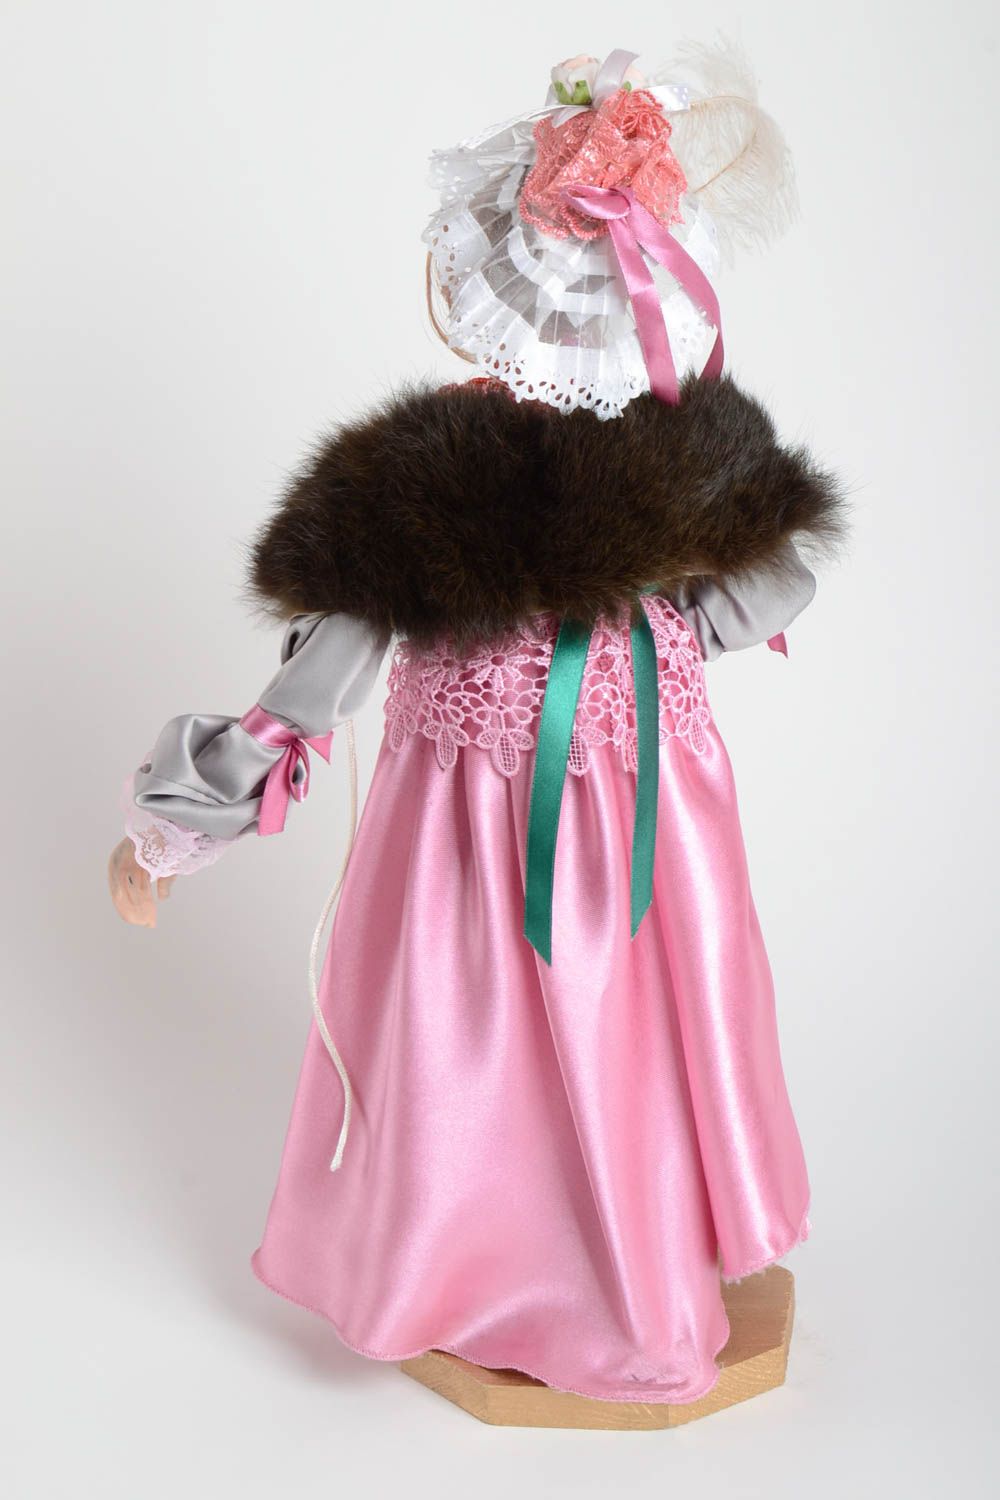 Дизайнерская авторская кукла с элементами лепки для декора Мадам ручной работы фото 3